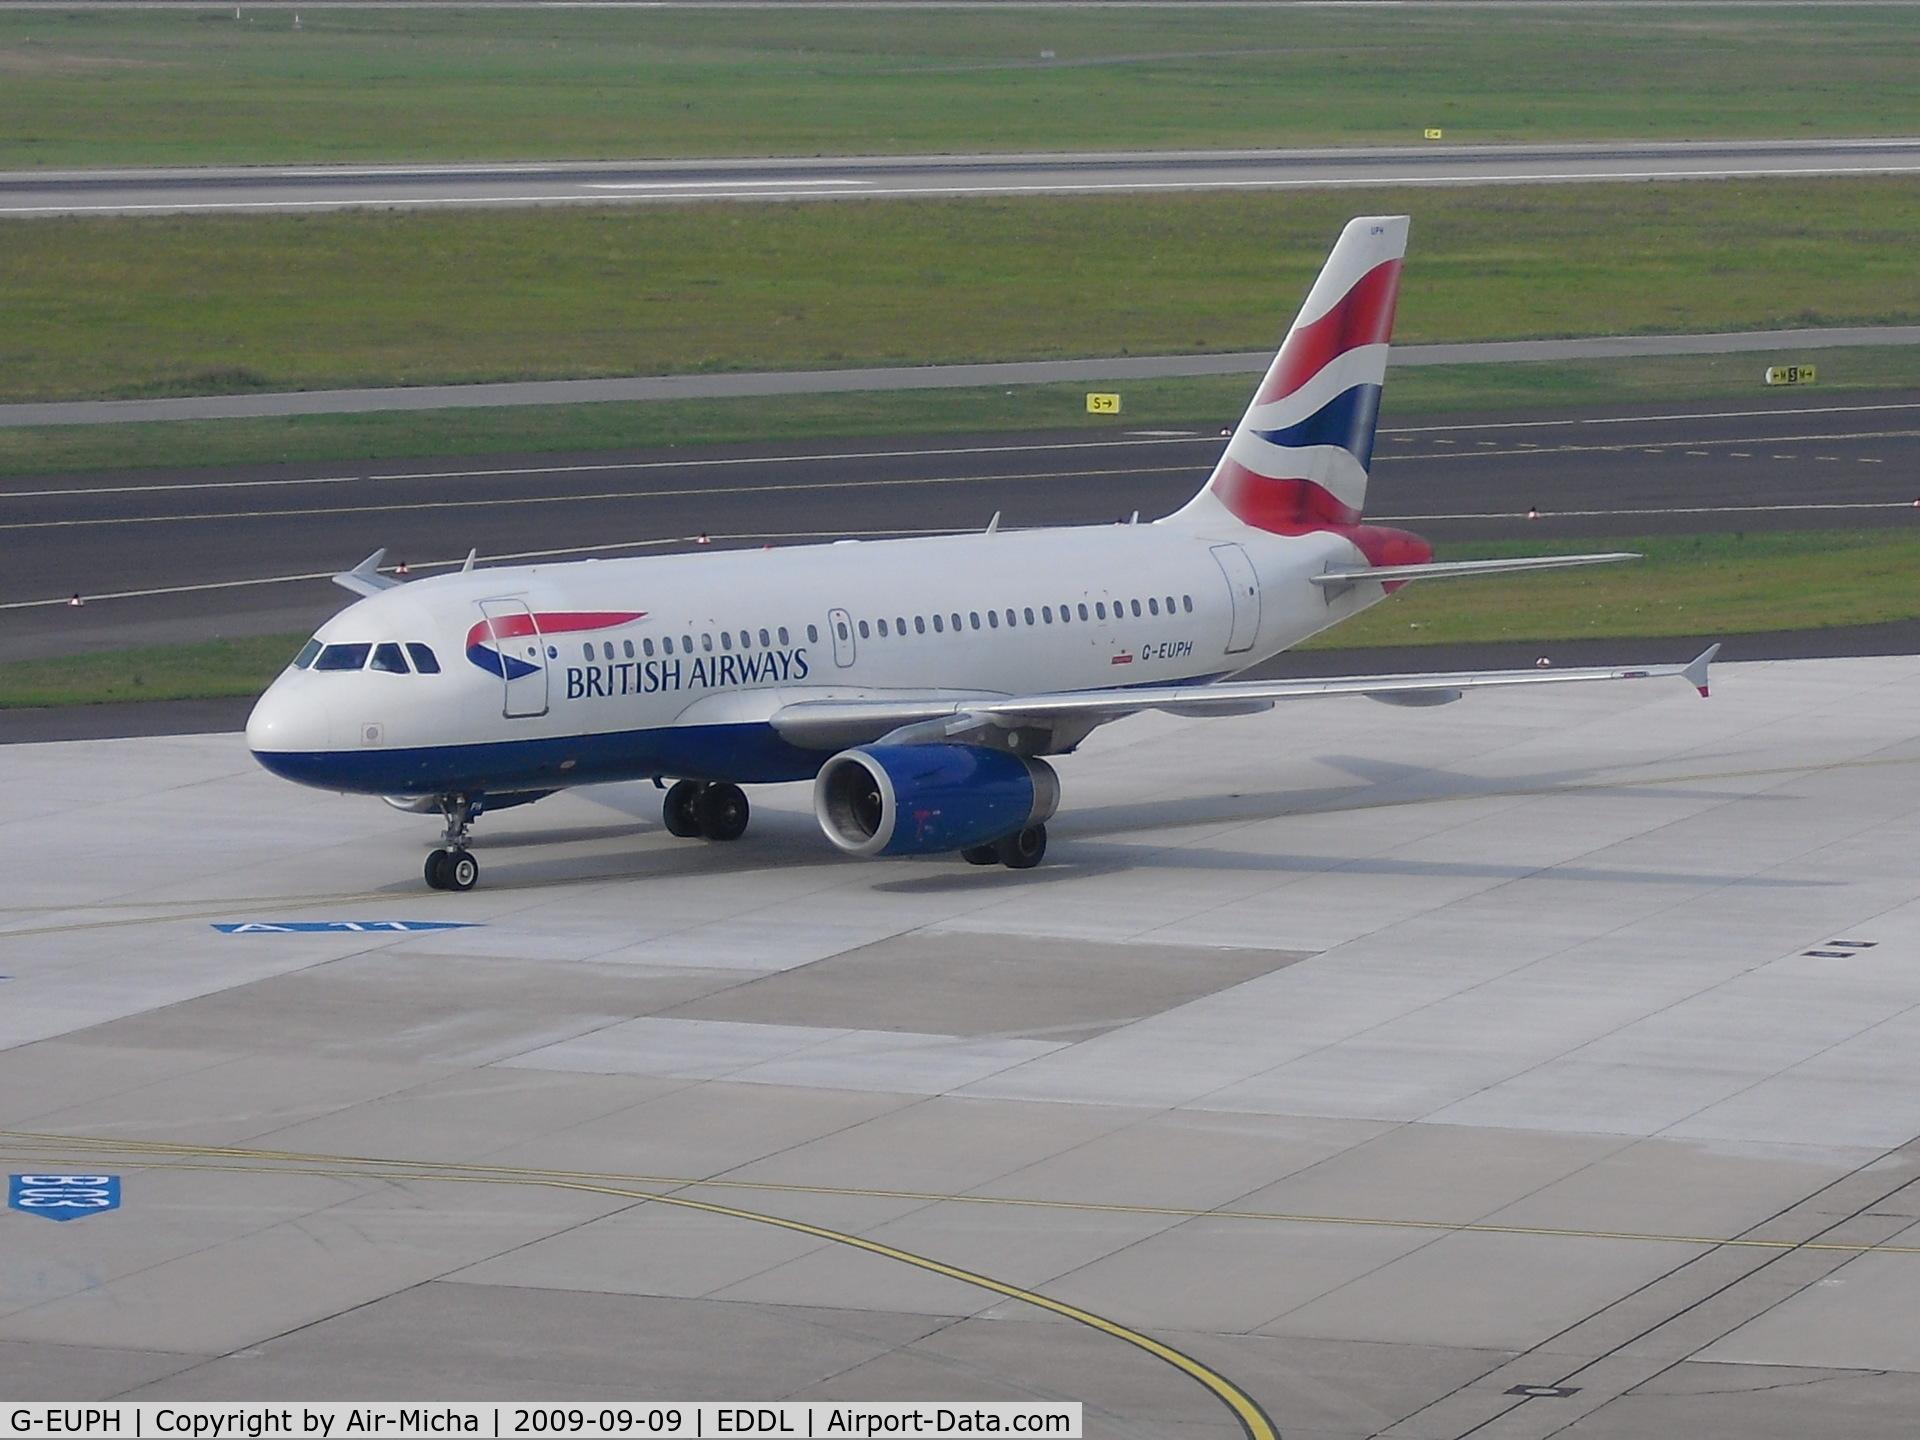 G-EUPH, 2000 Airbus A319-131 C/N 1225, British Airways, Airbus A319-131, CN: 1225